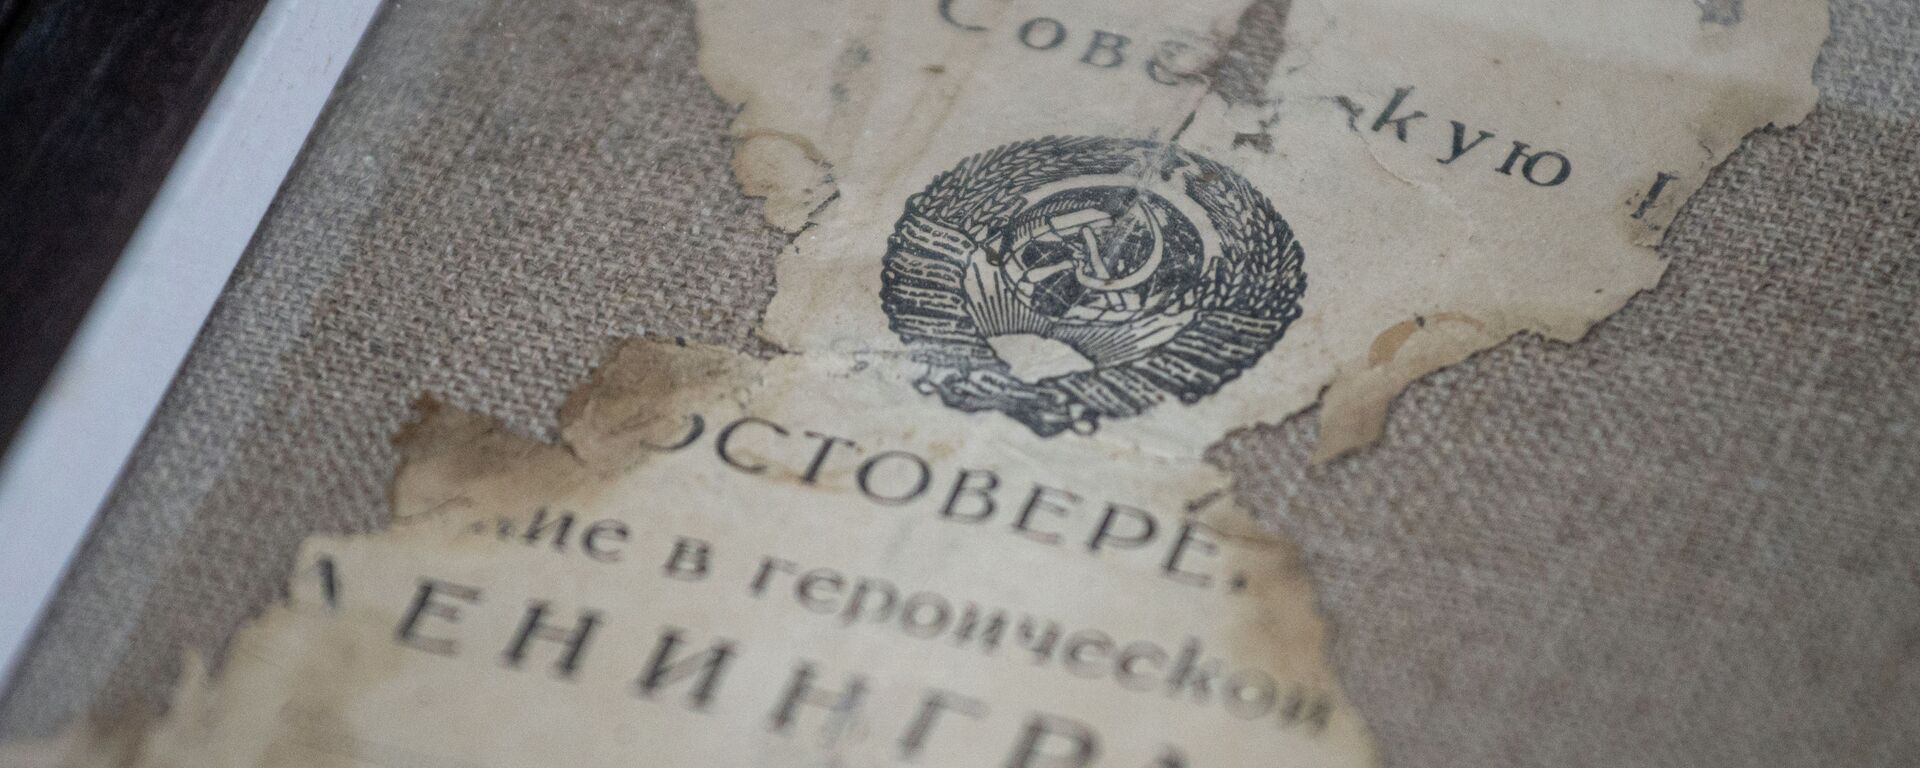 Фрагмент документов, найденных в посмертном медальоне  - Sputnik Казахстан, 1920, 23.03.2021